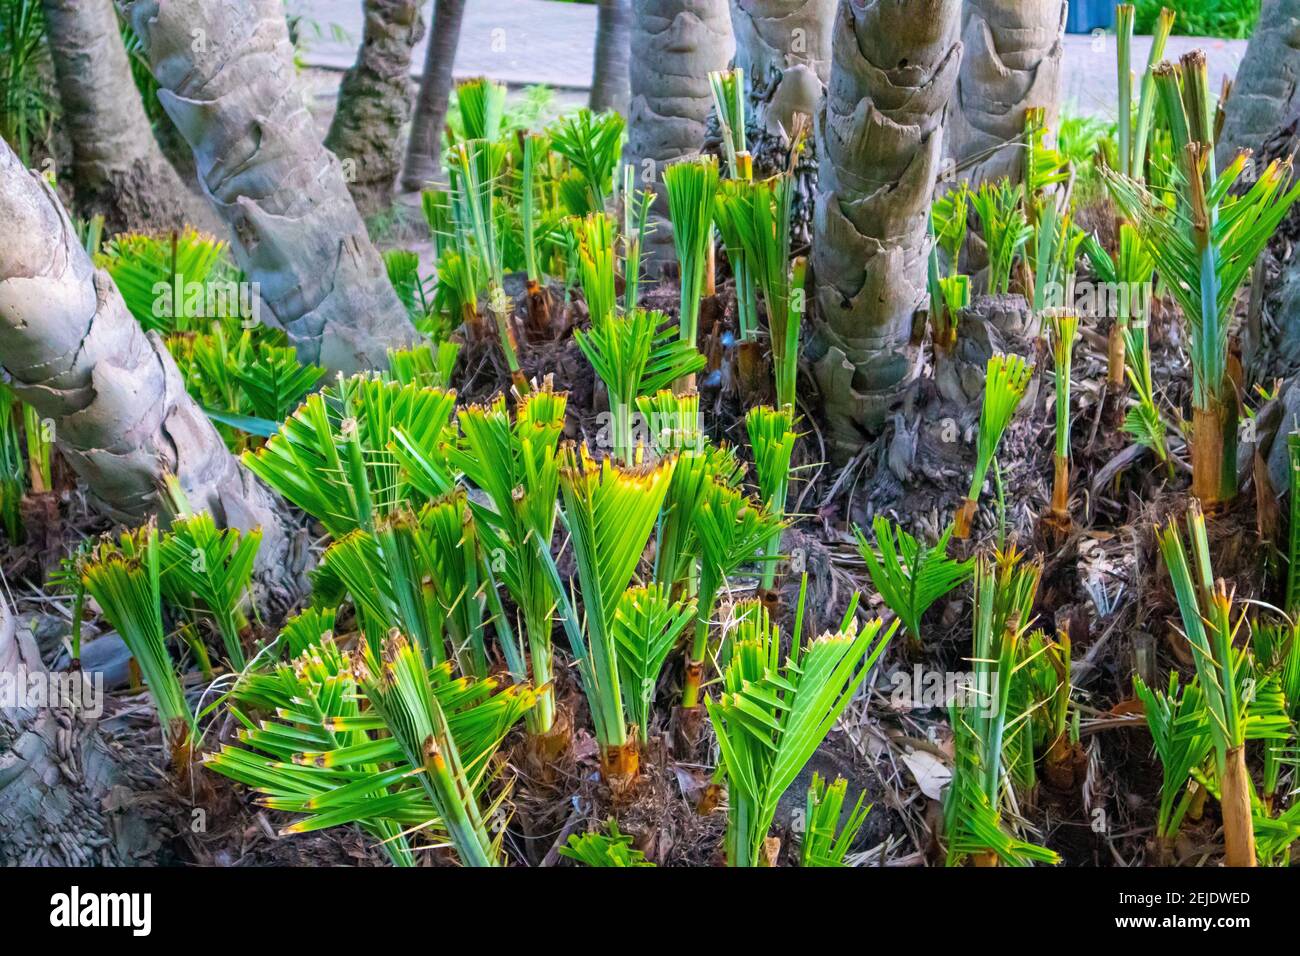 Jardins- le Cap, Afrique du Sud - 19-02-2021 palmiers jeunes, vivants et verts. Dans leurs premiers stades de croissance. Banque D'Images